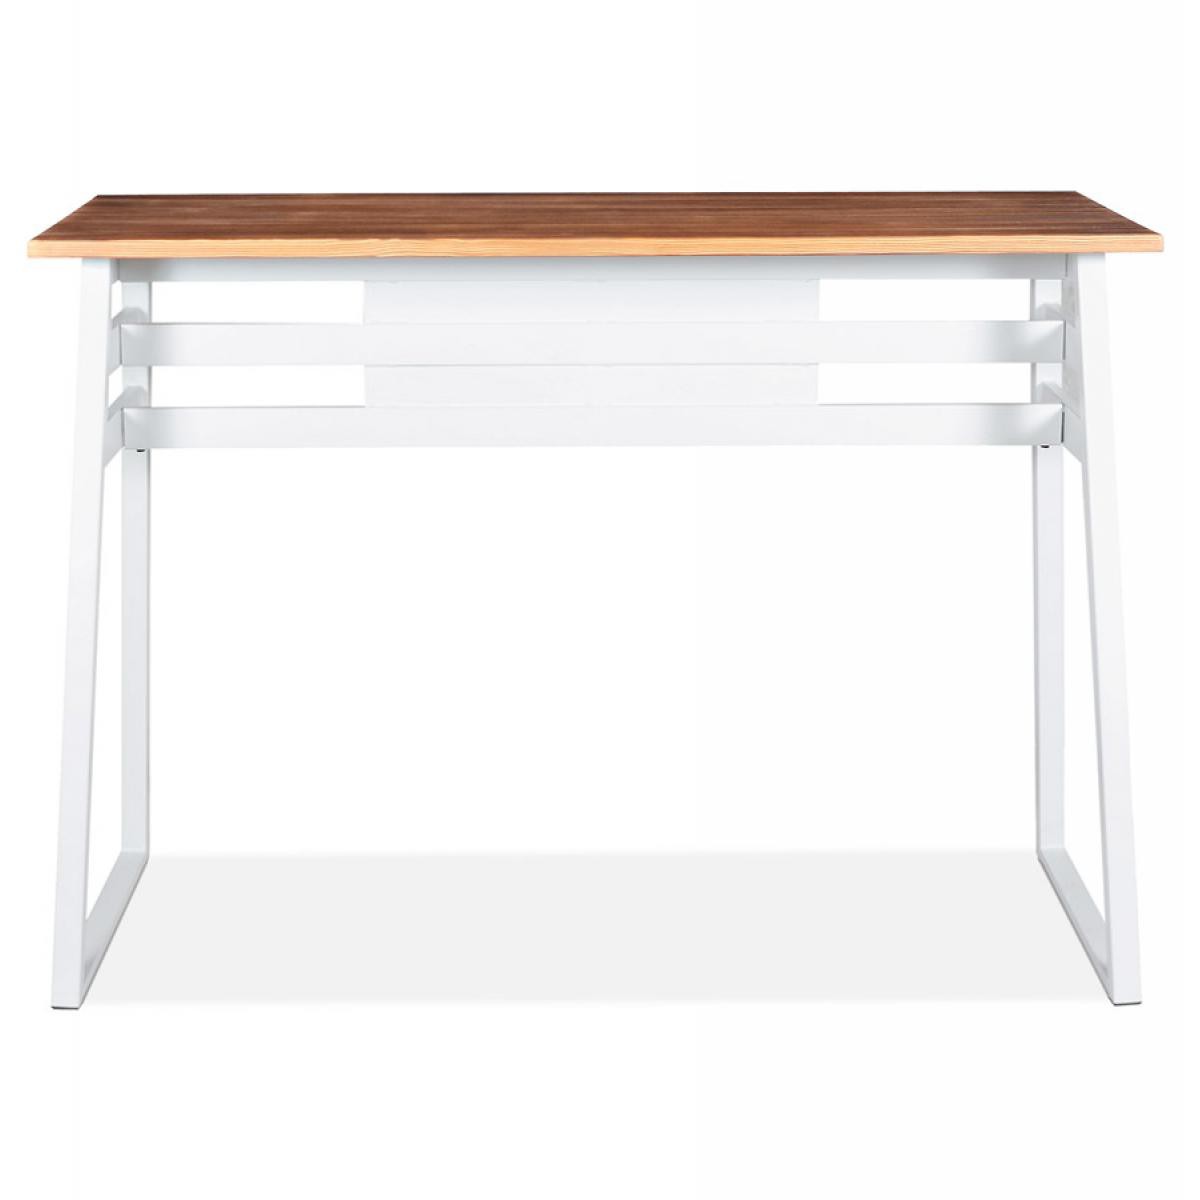 Alterego - Table de bar haute 'NIKI' en bois massif et pied en métal blanc - 150x60 cm - Tables à manger